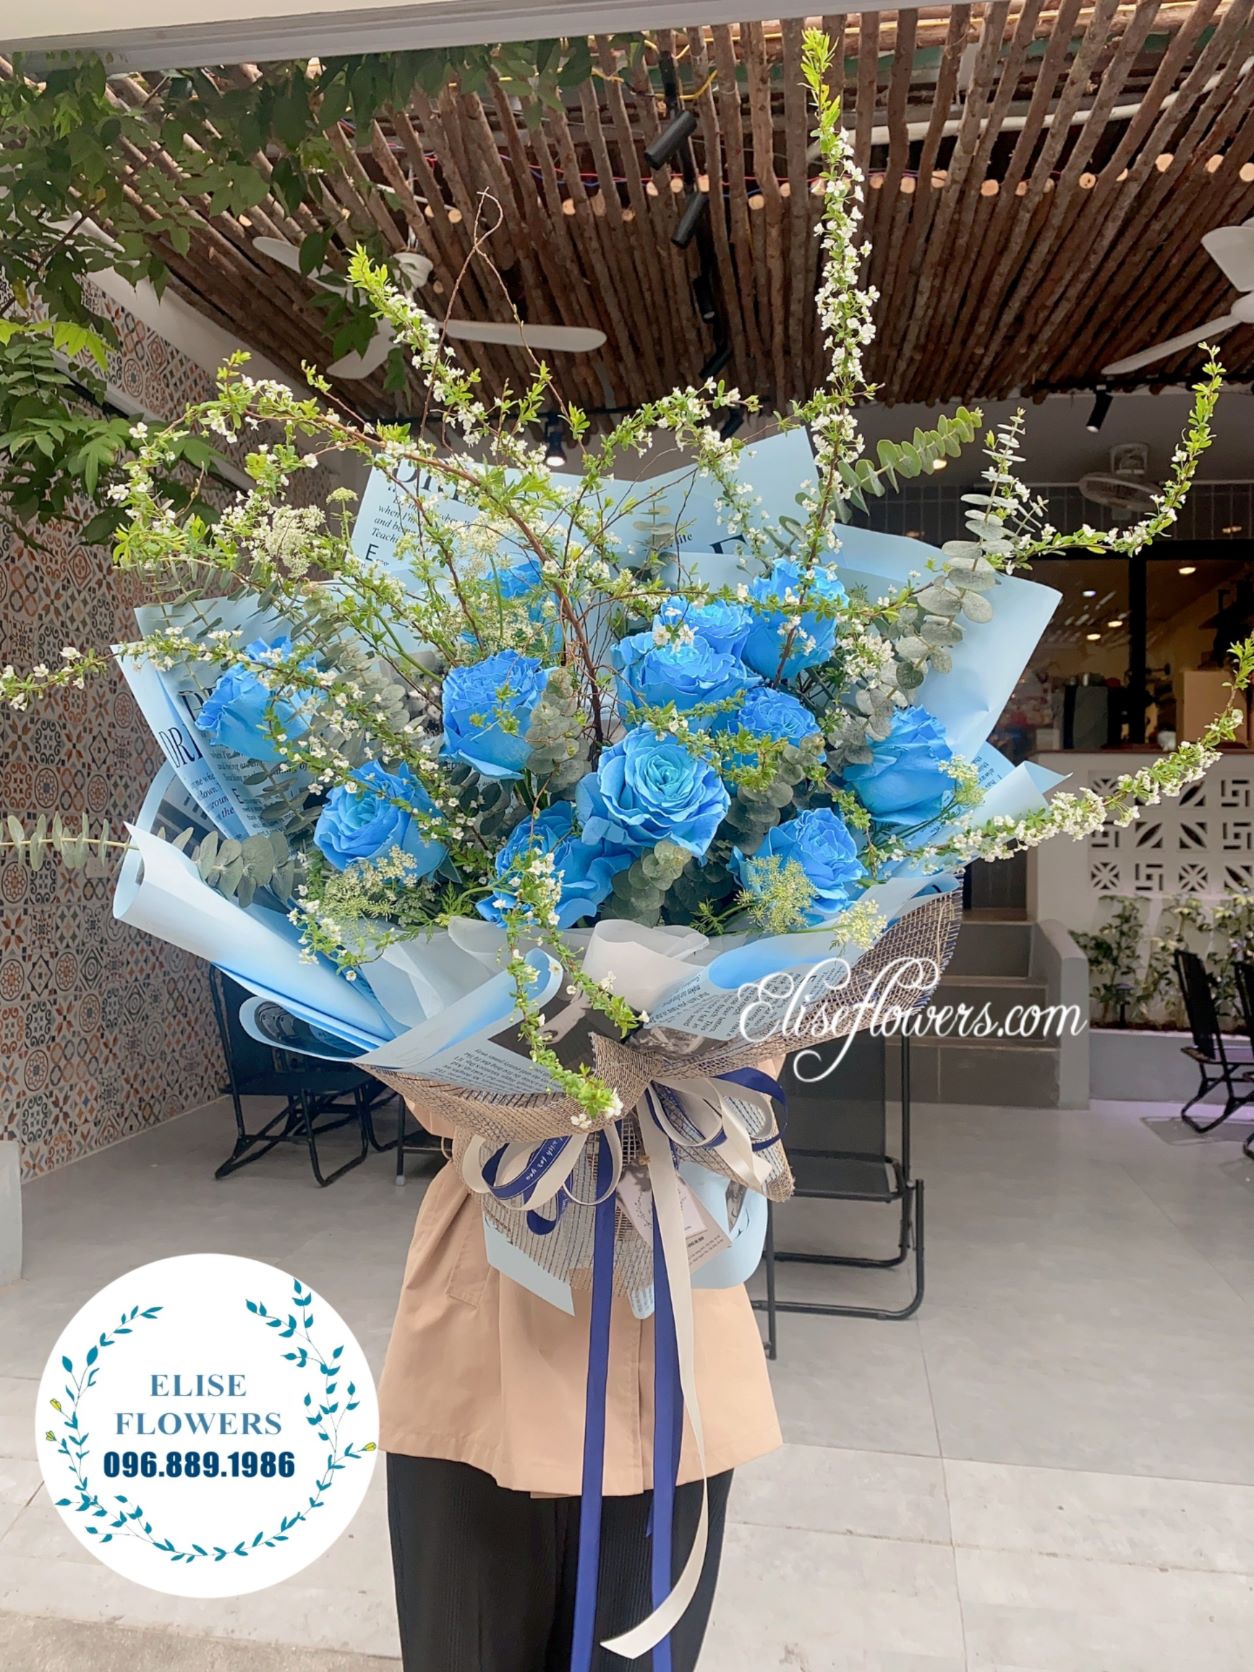 Bó hoa tươi ở Hà Nội | Bó hoa nhập khẩu cao cấp | Bó hoa hồng xanh độc lạ nhất tại Hà Nội | Mẫu hoa tươi đẹp nhất tại quận Đống Đa 